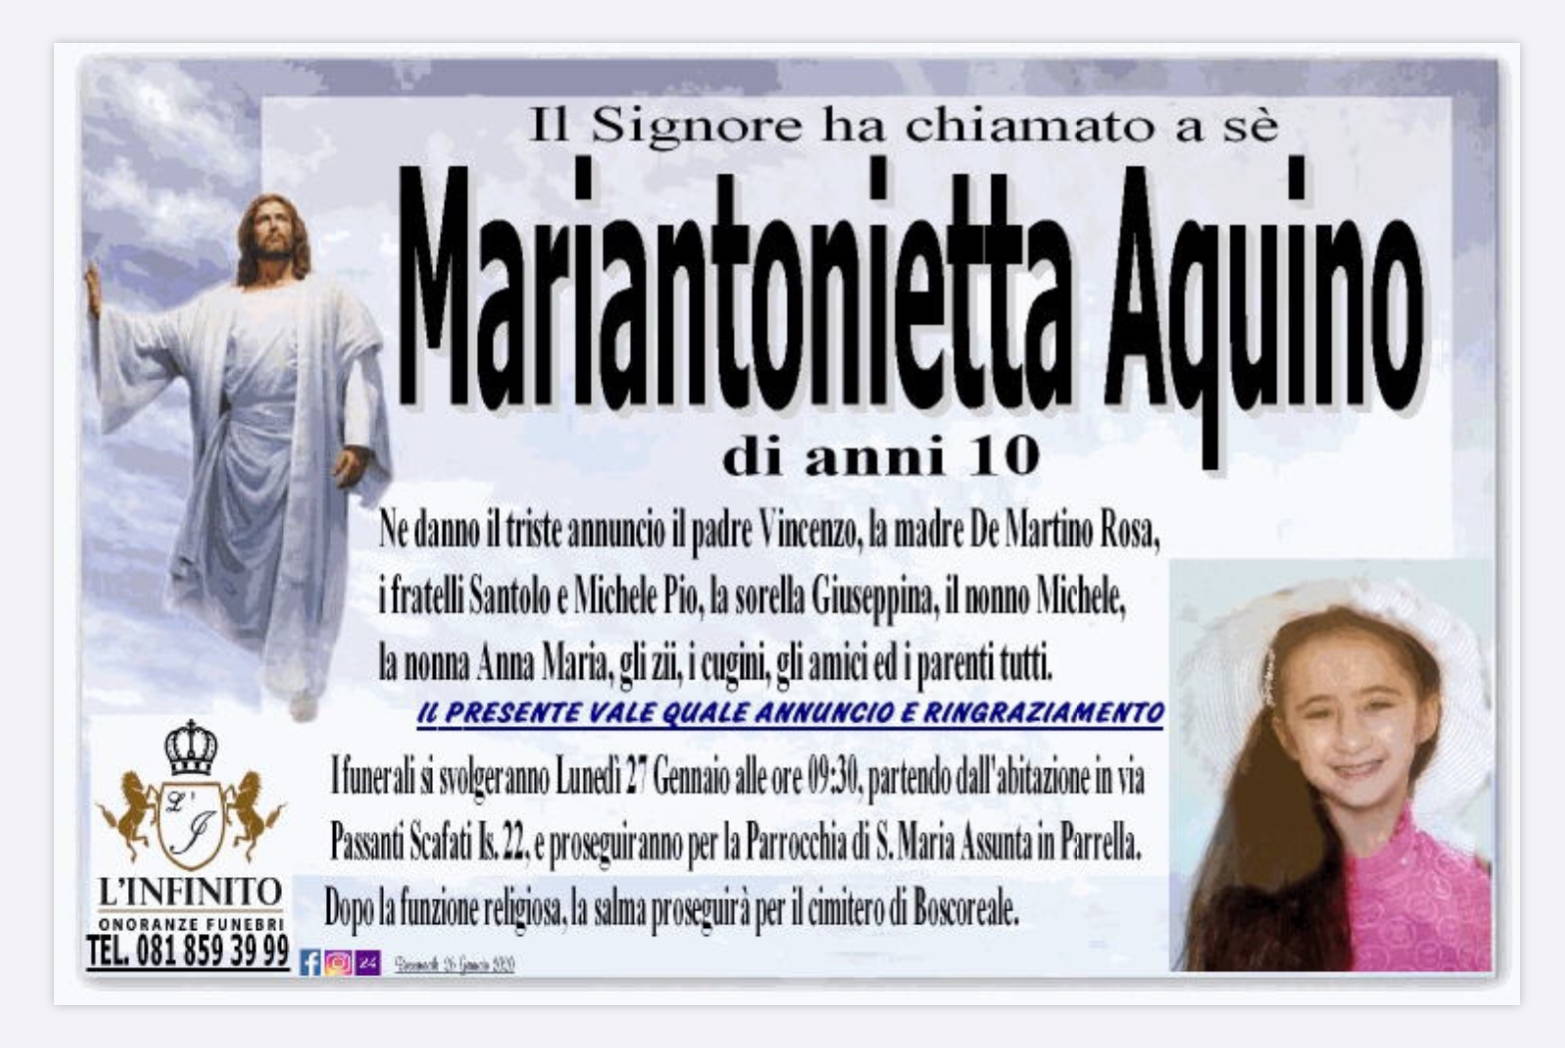 Mariantonietta Aquino